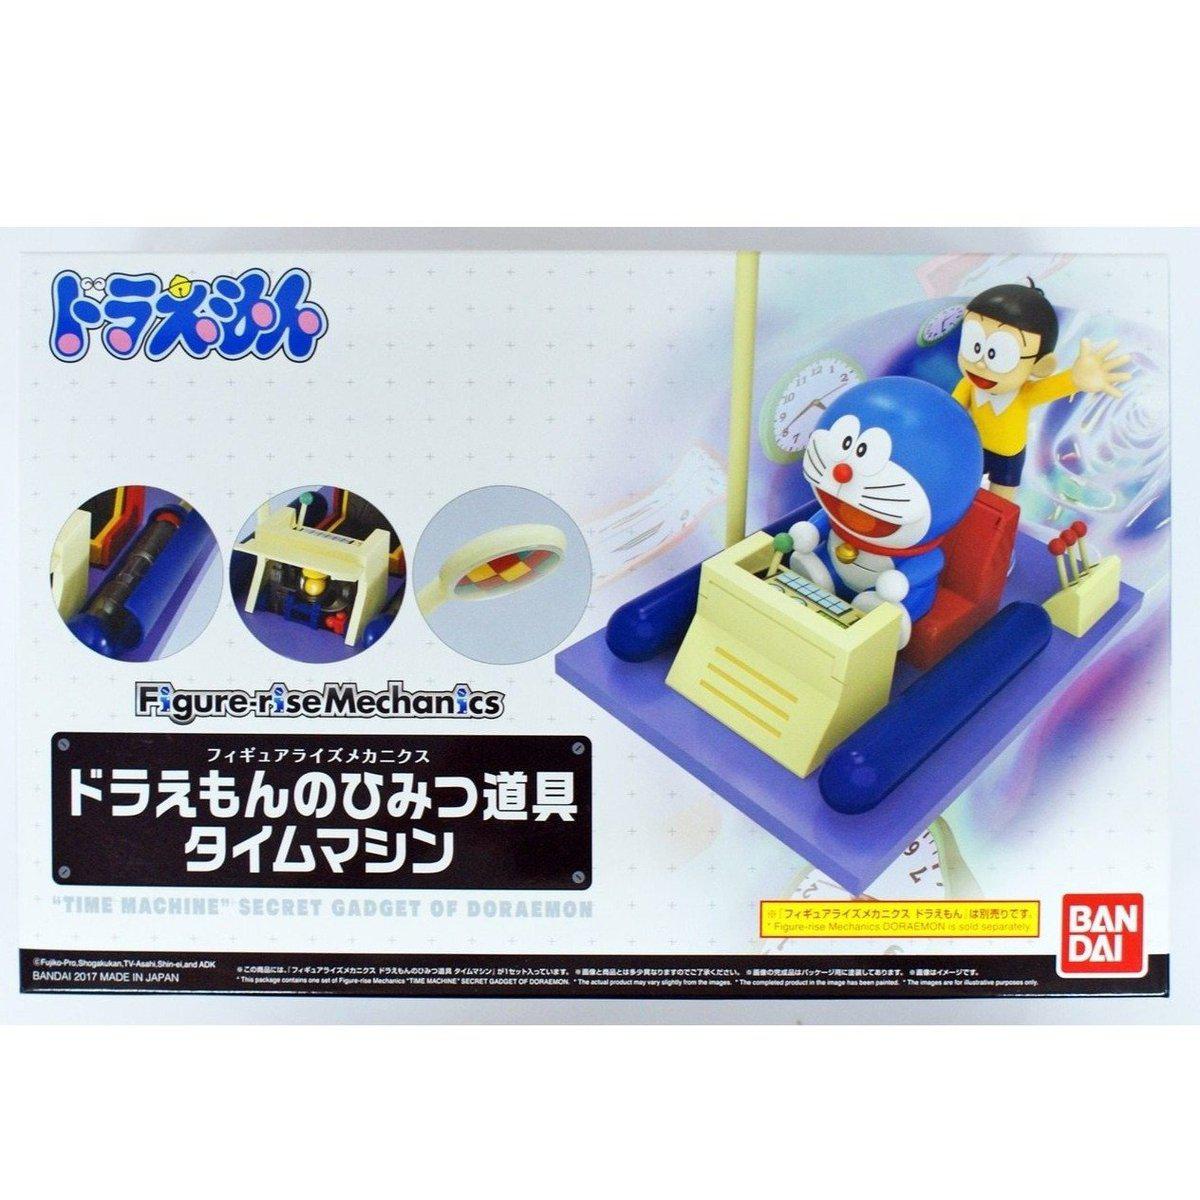 Doraemon Figure-rise Mechanics &quot;Time Machine&quot; Secret Gadget of Doraemon-Bandai-Ace Cards &amp; Collectibles